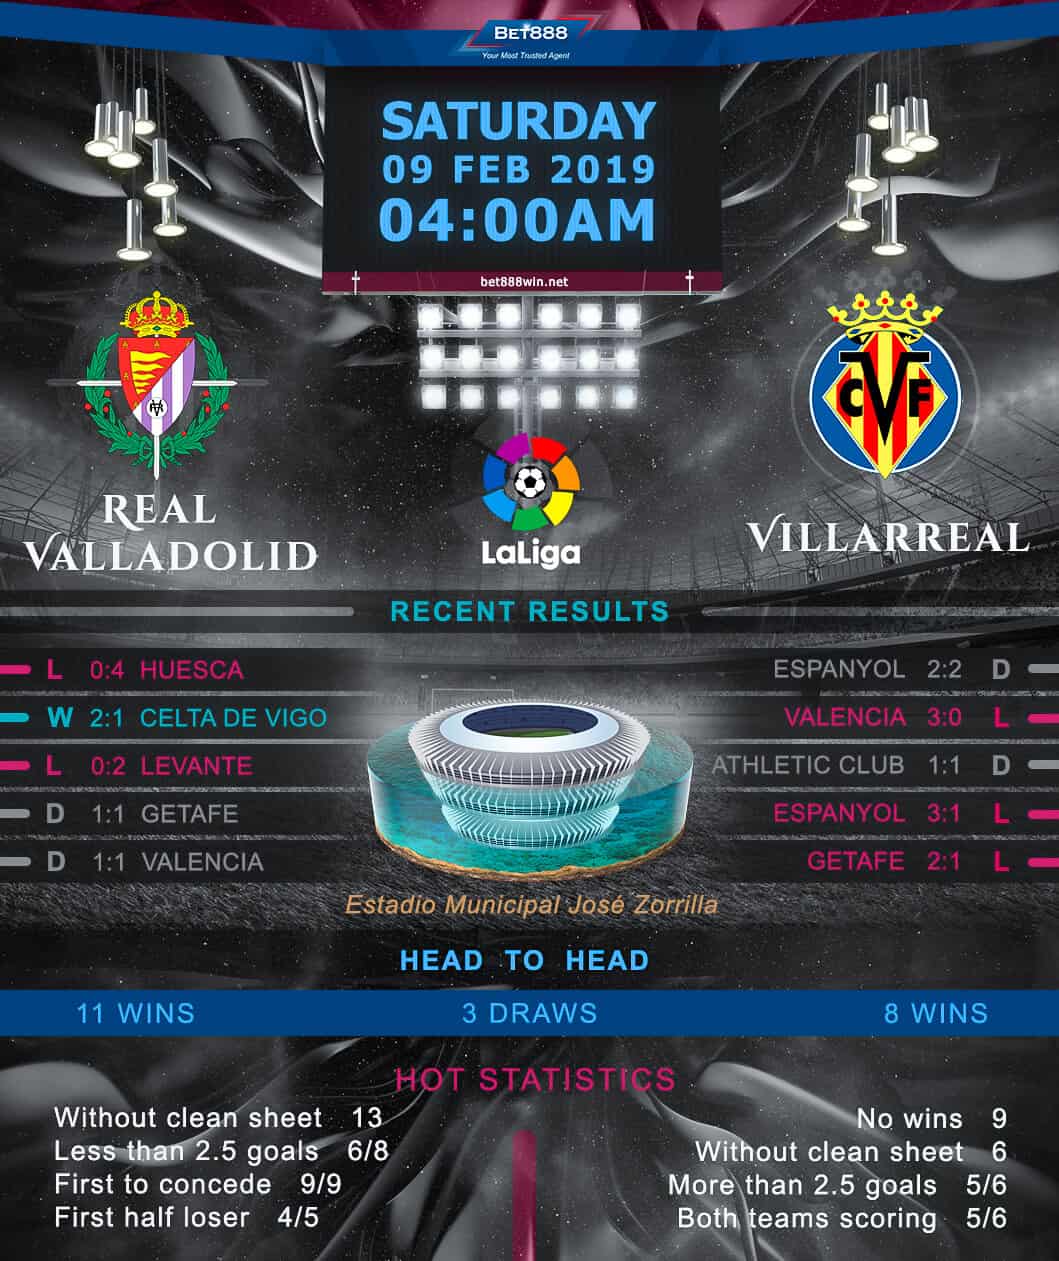 Real Valladolid vs Villarreal 09/02/19